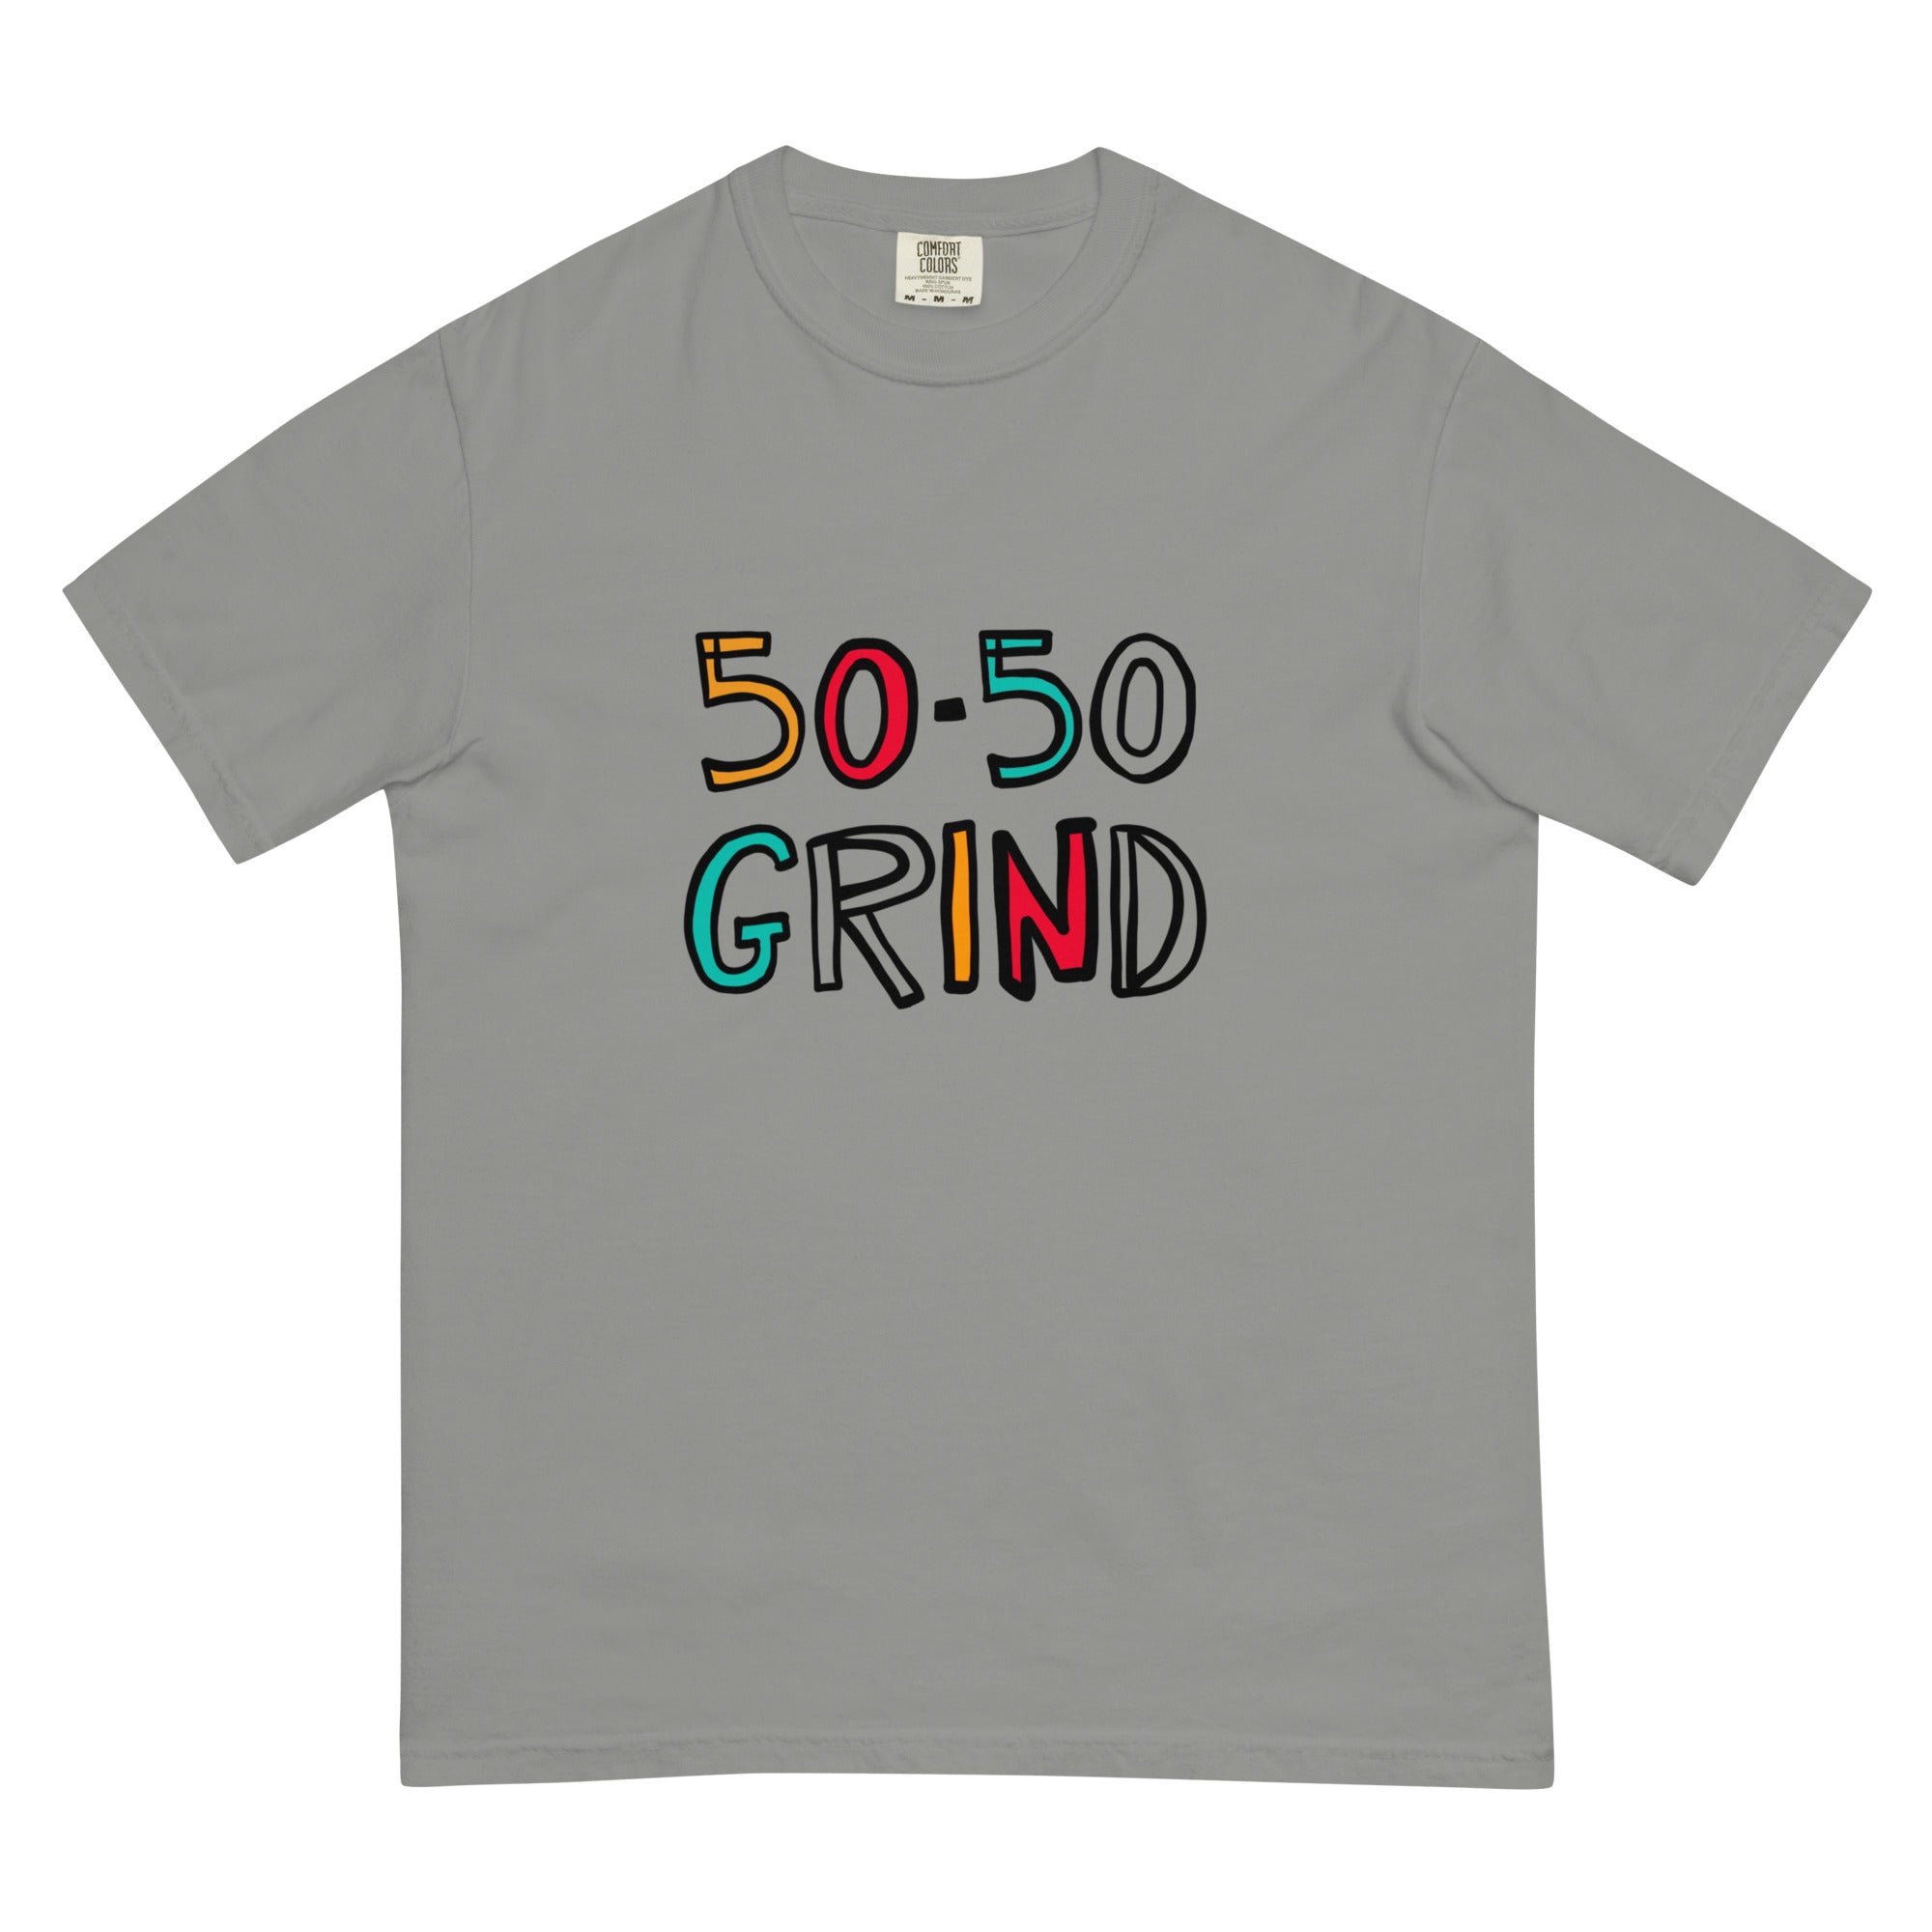 50-50 Grind Unisex Comfort Colors T-shirt